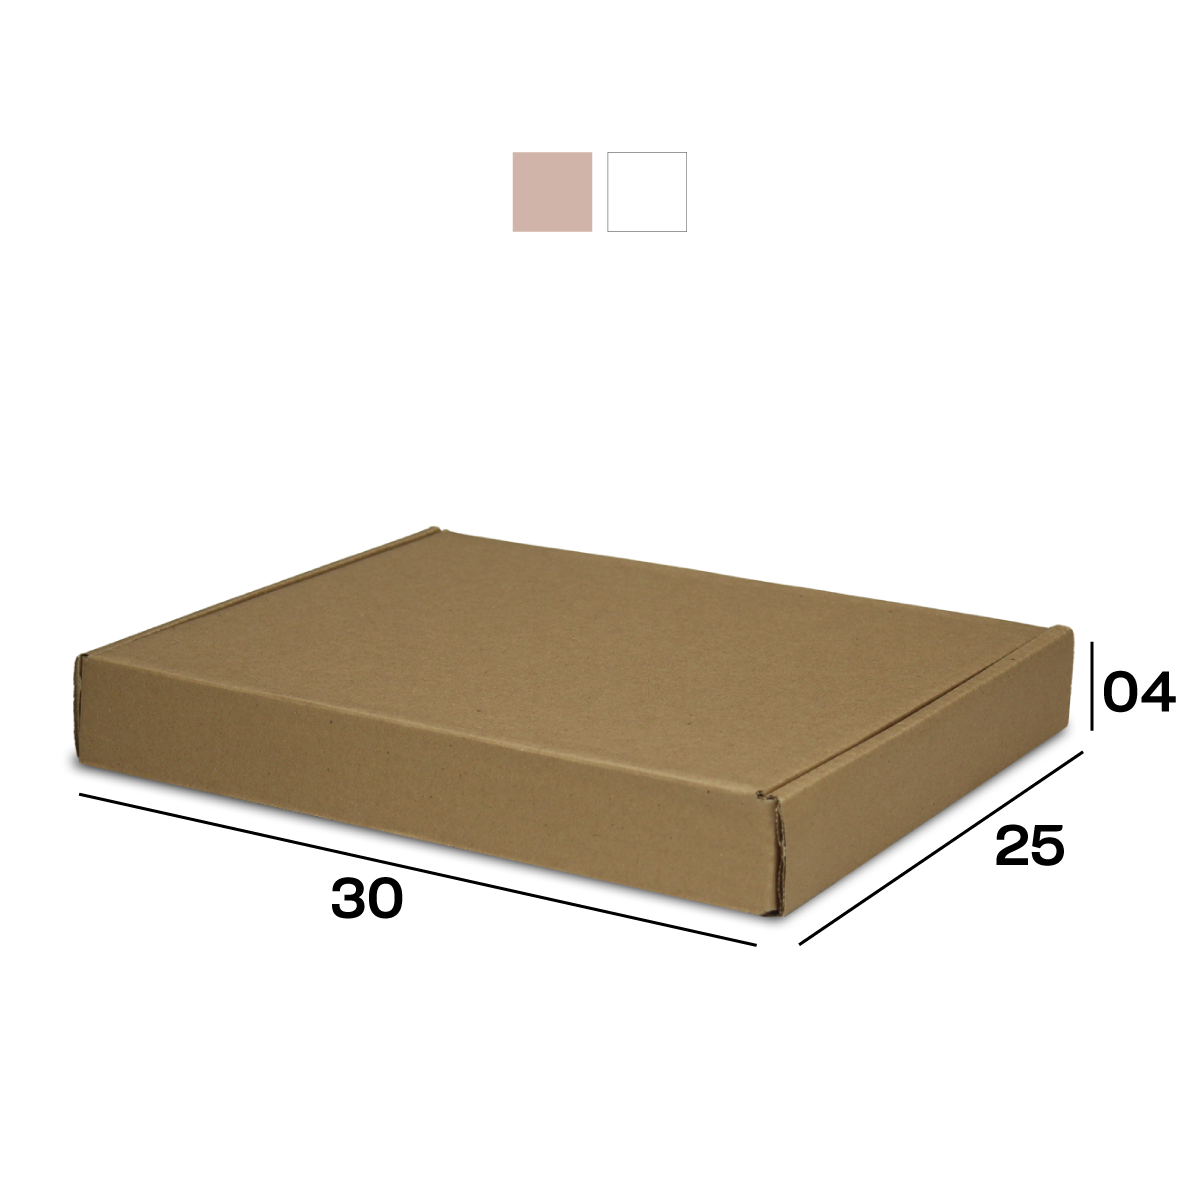 Caixa de Papelão Sedex 02 (30x25x4) Lisa